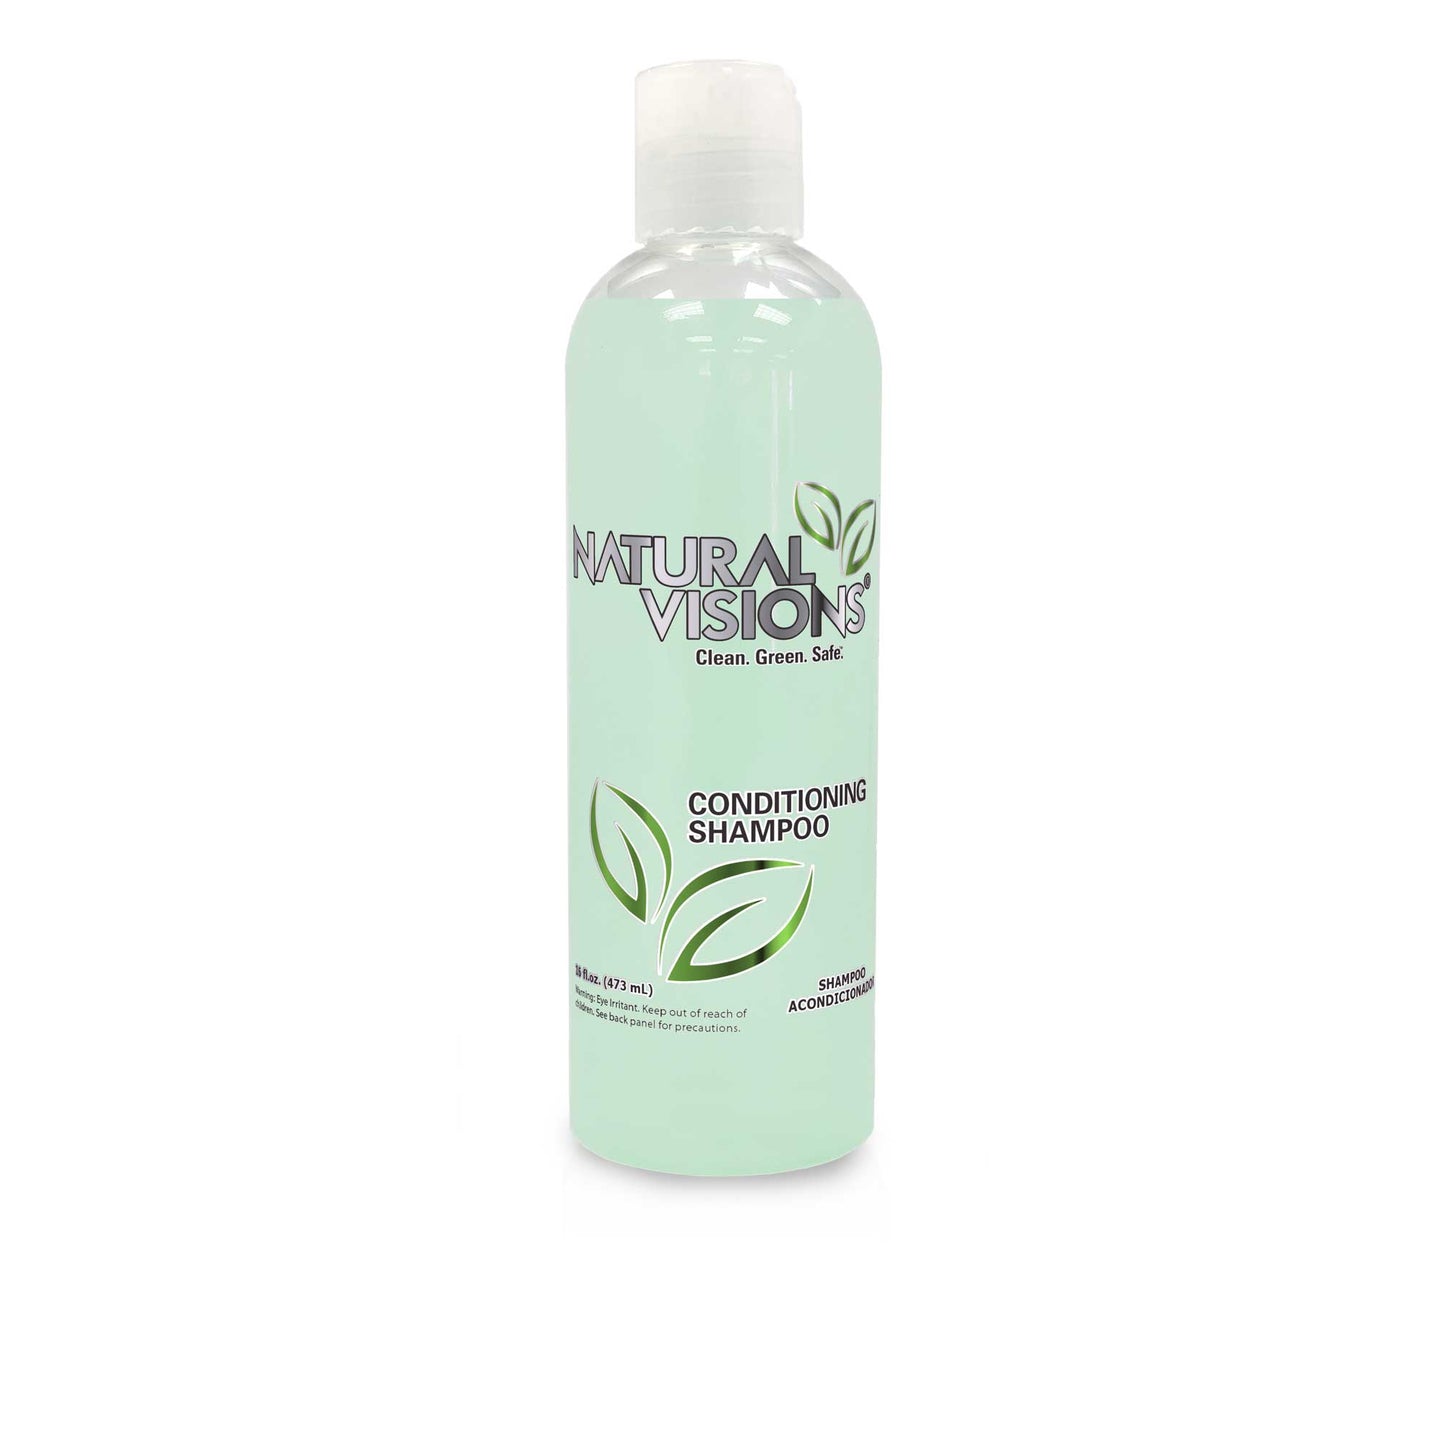 Natural Visions® Conditioning Shampoo - 16 oz